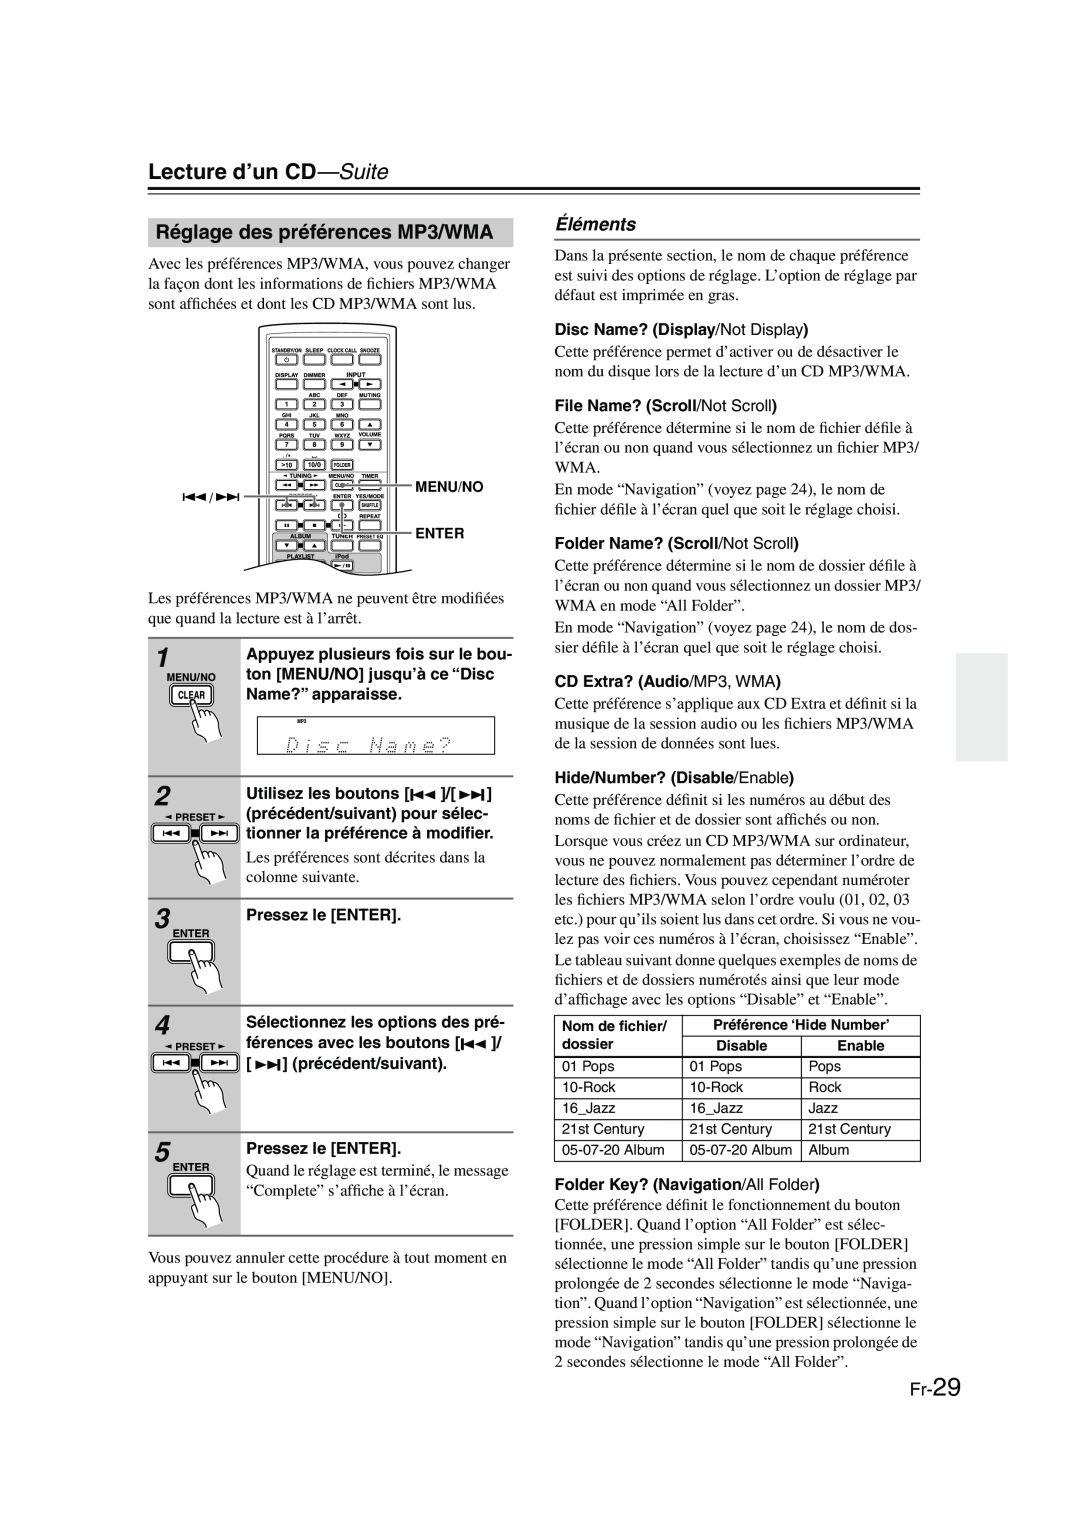 Onkyo CBX-300 instruction manual Réglage des préférences MP3/WMA, Éléments, Fr-29, Lecture d’un CD-Suite 